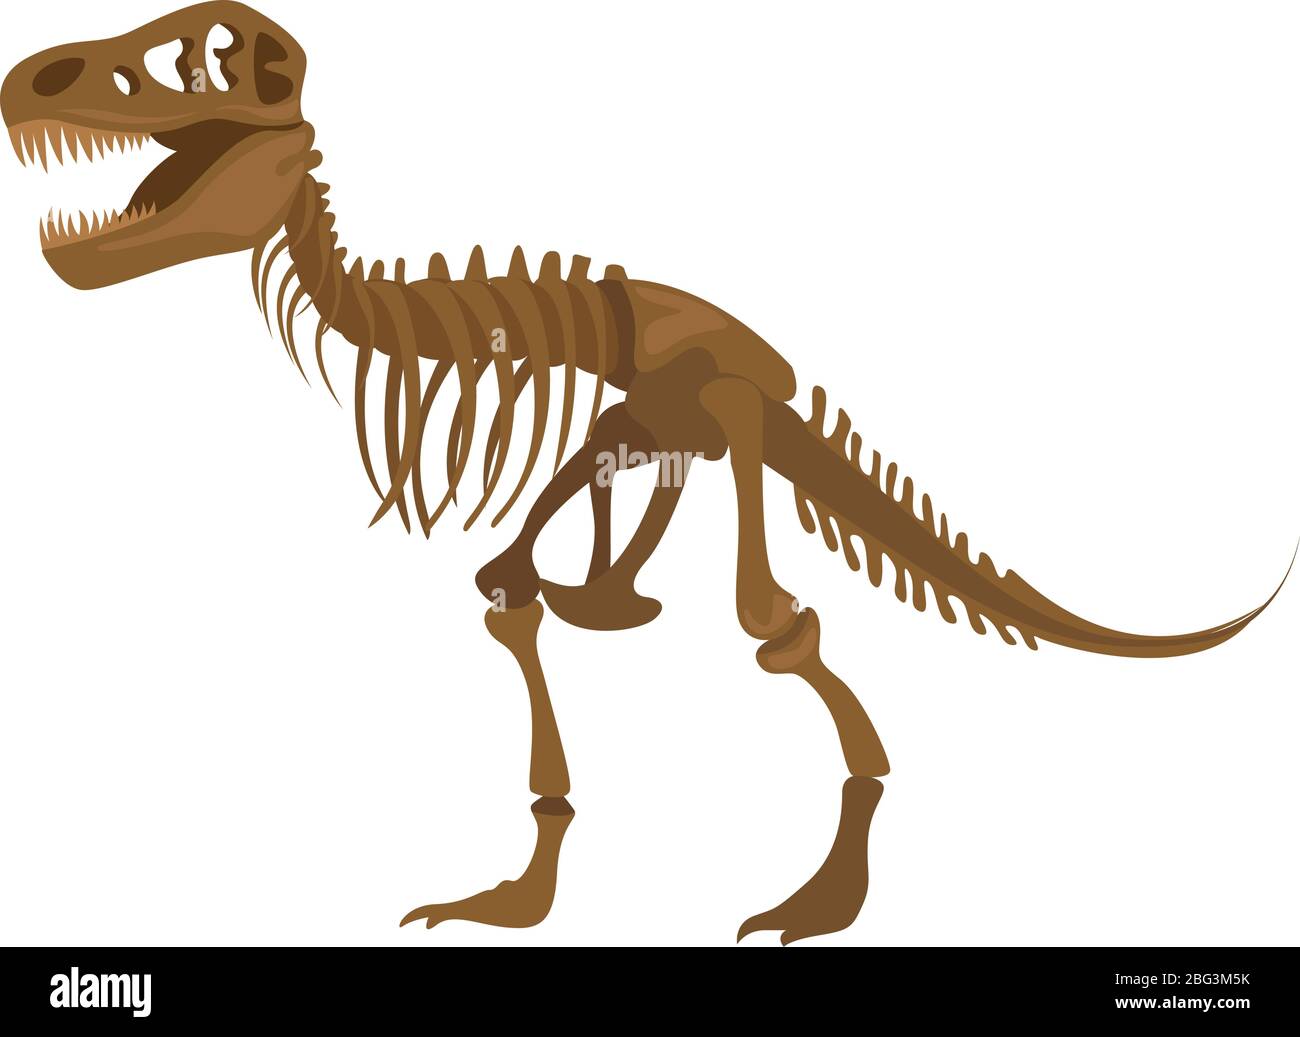 Dinosaur skeleton, illustration, vector on white background Stock Vector